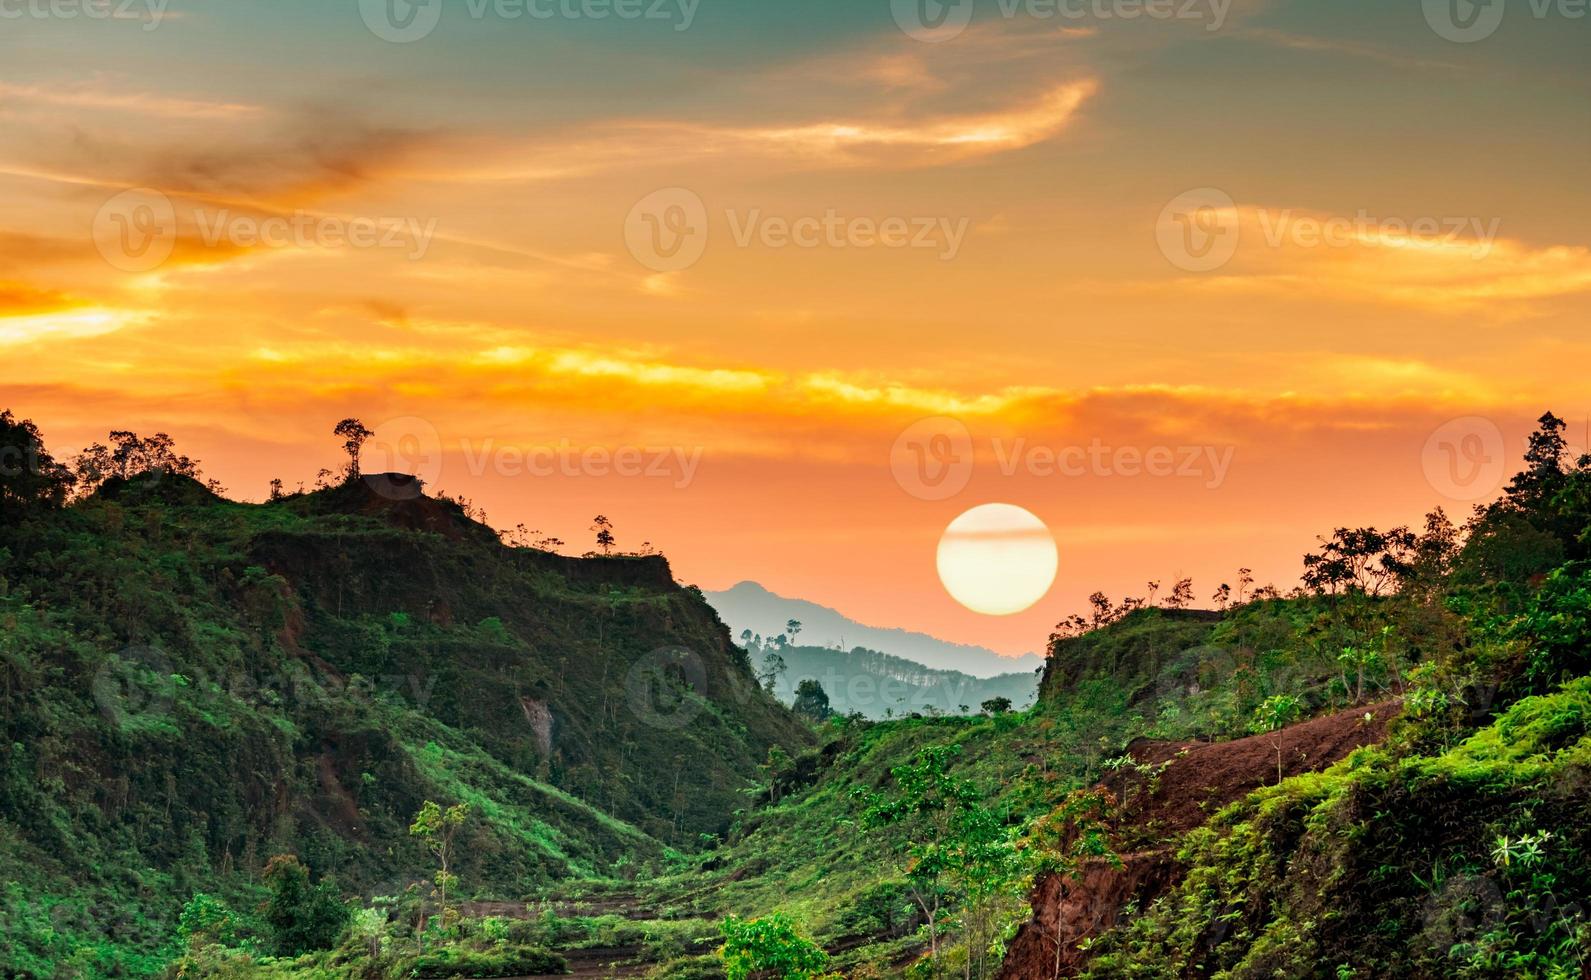 vackert naturlandskap av bergskedja med solnedgångshimmel och moln. bergsdalen i thailand. landskap av bergslager i skymningen. tropisk skog. naturlig bakgrund. orange och gyllene himmel. foto